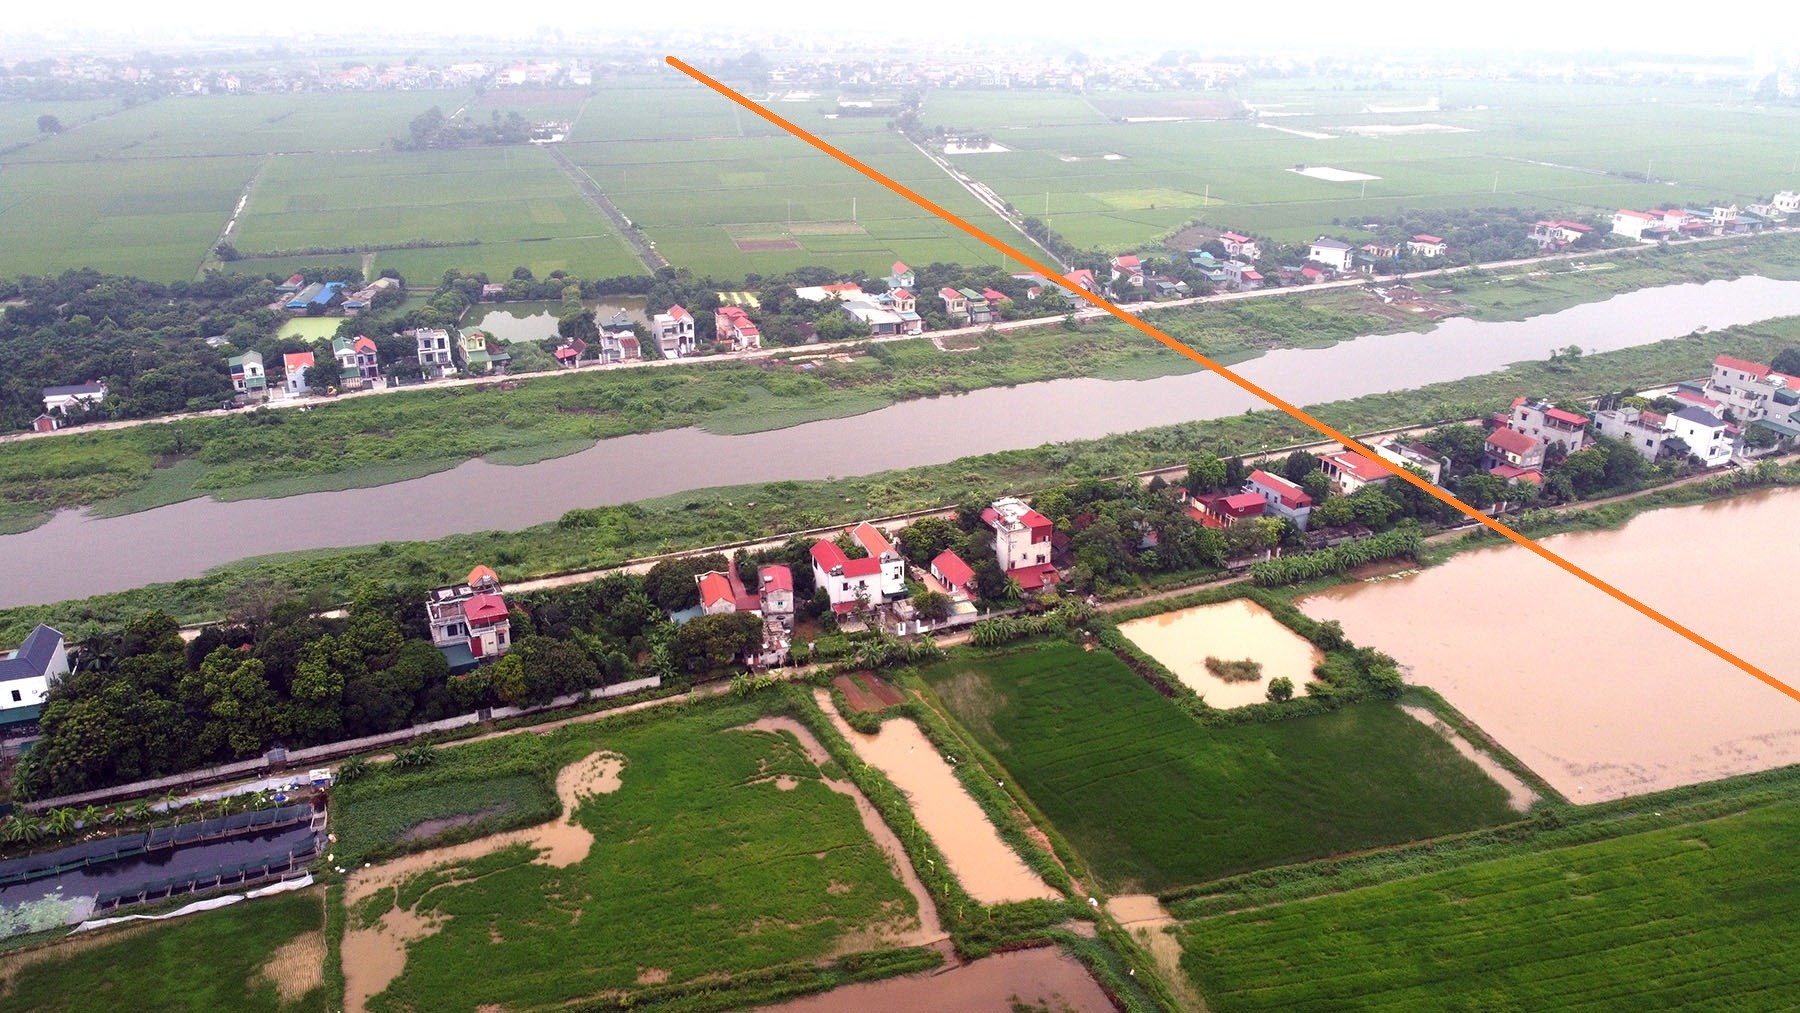 Toàn cảnh vị trí dự kiến xây cầu vượt sông Nhuệ nối xã Nhật Tựu, Kim Bảng với Ngọc Động, Duy Tiên, Hà Nam